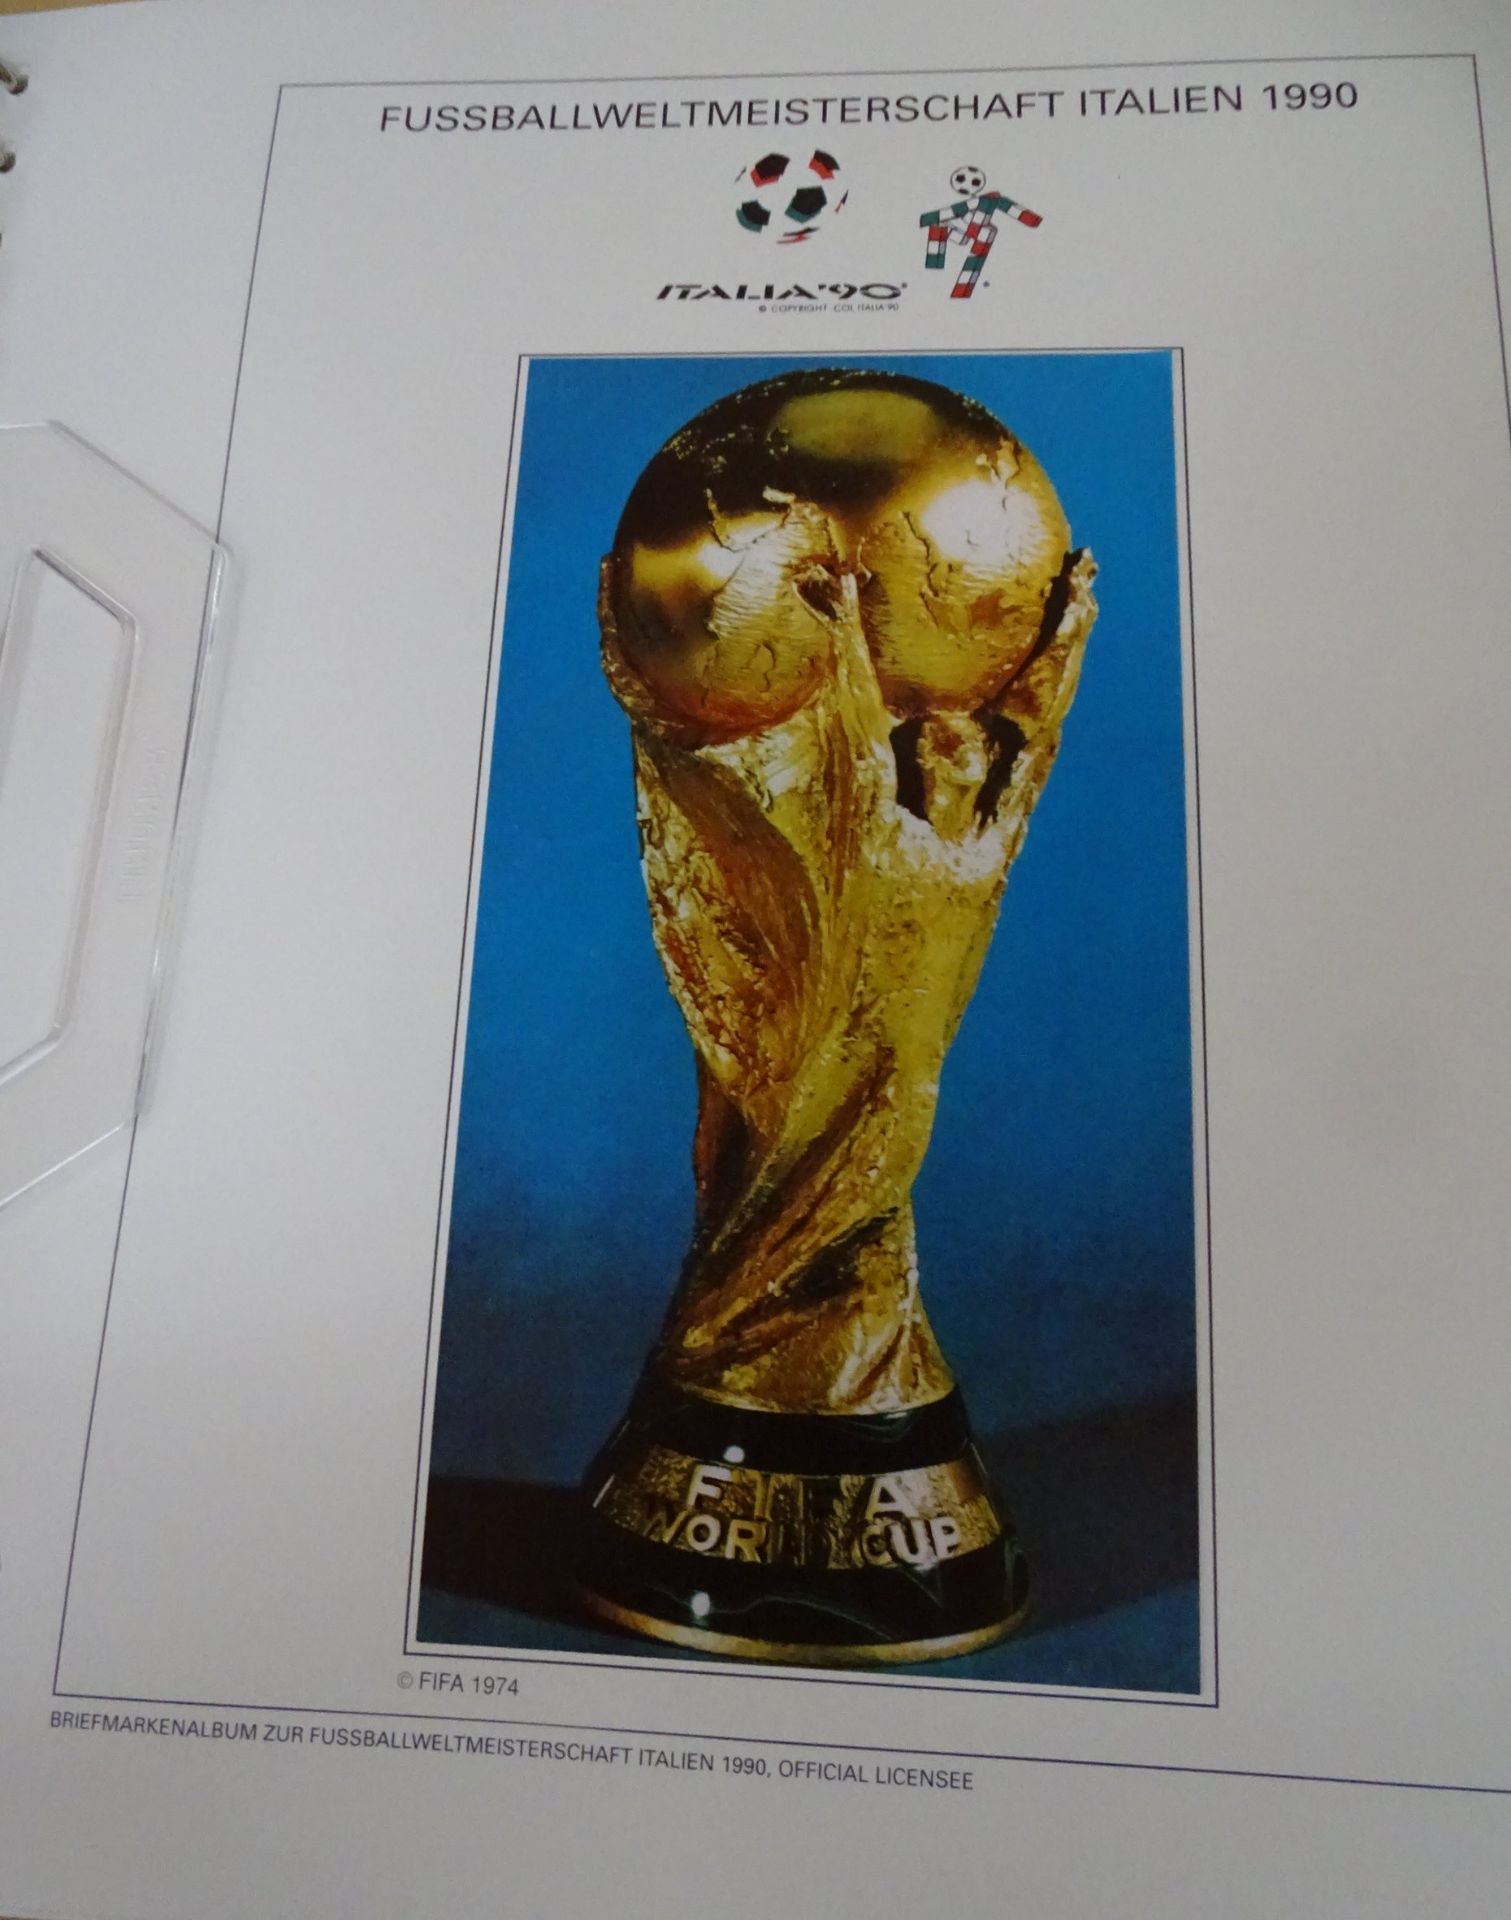 4x lomplette Linbder Ordner "Italia 90" Briefmarkenalbum zur Fussball- Weltmeisterschaft, official - Image 2 of 13